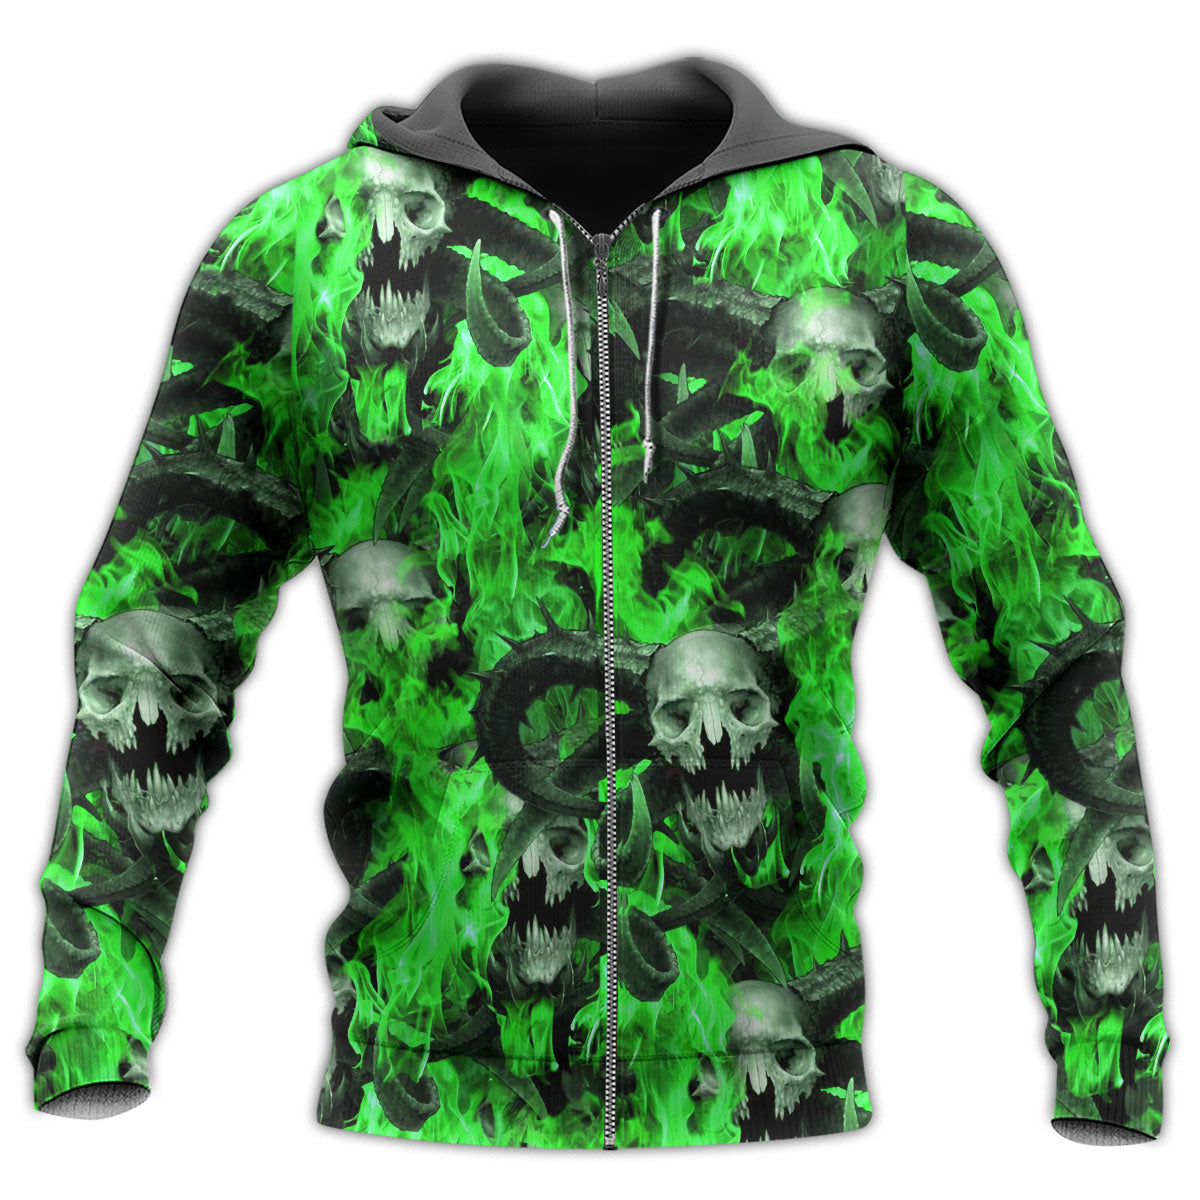 Zip Hoodie / S Skull Green Flame Burn - Hoodie - Owls Matrix LTD